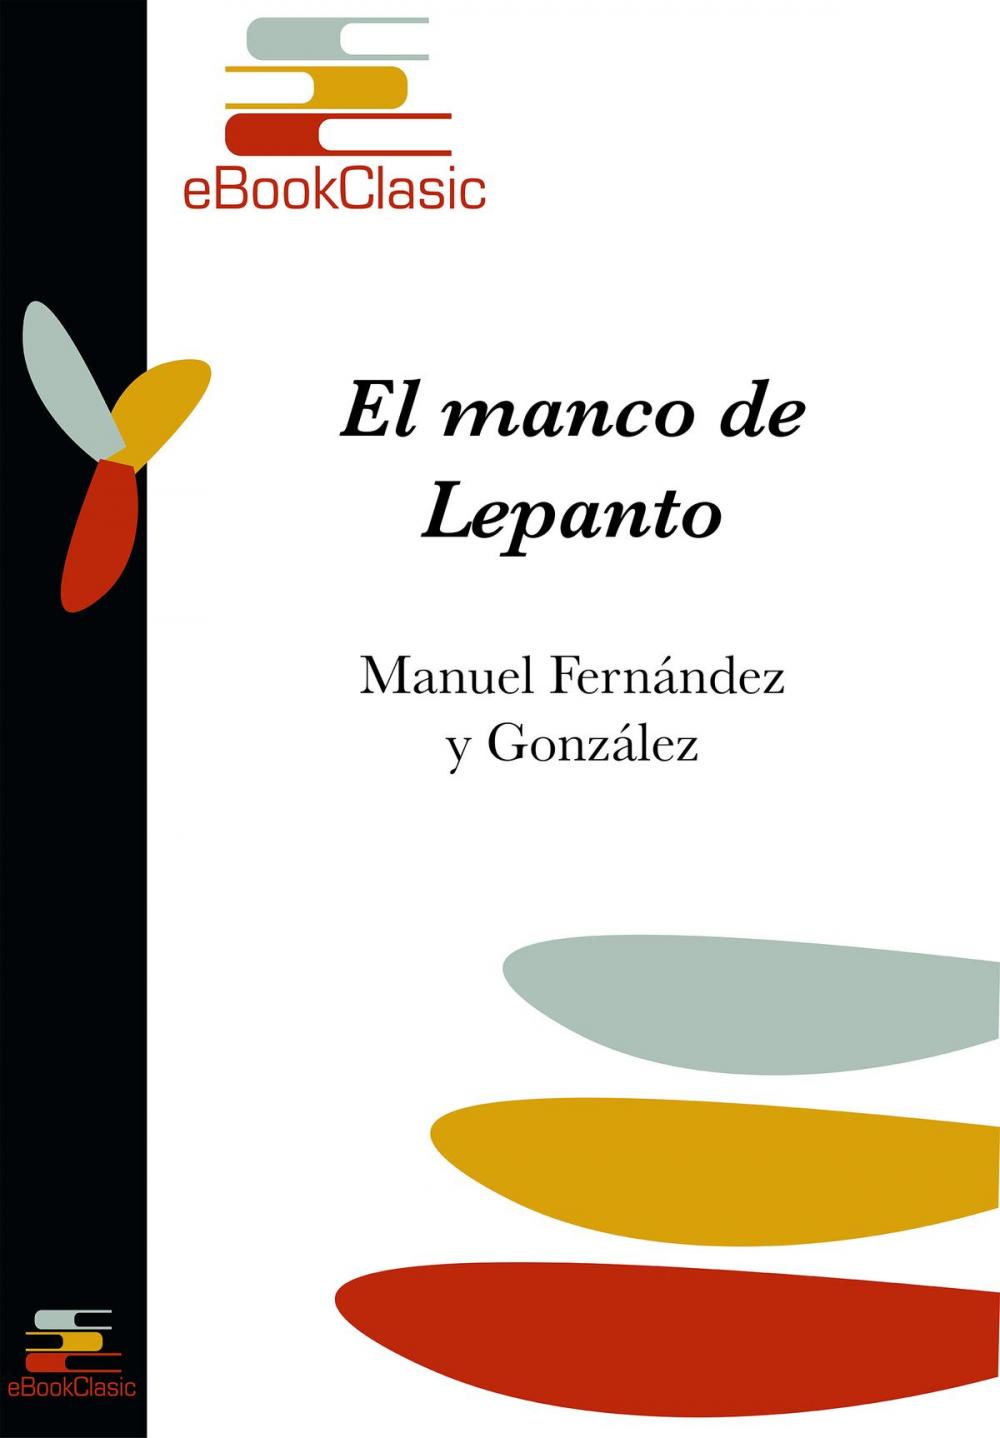 Big bigCover of El manco de Lepanto